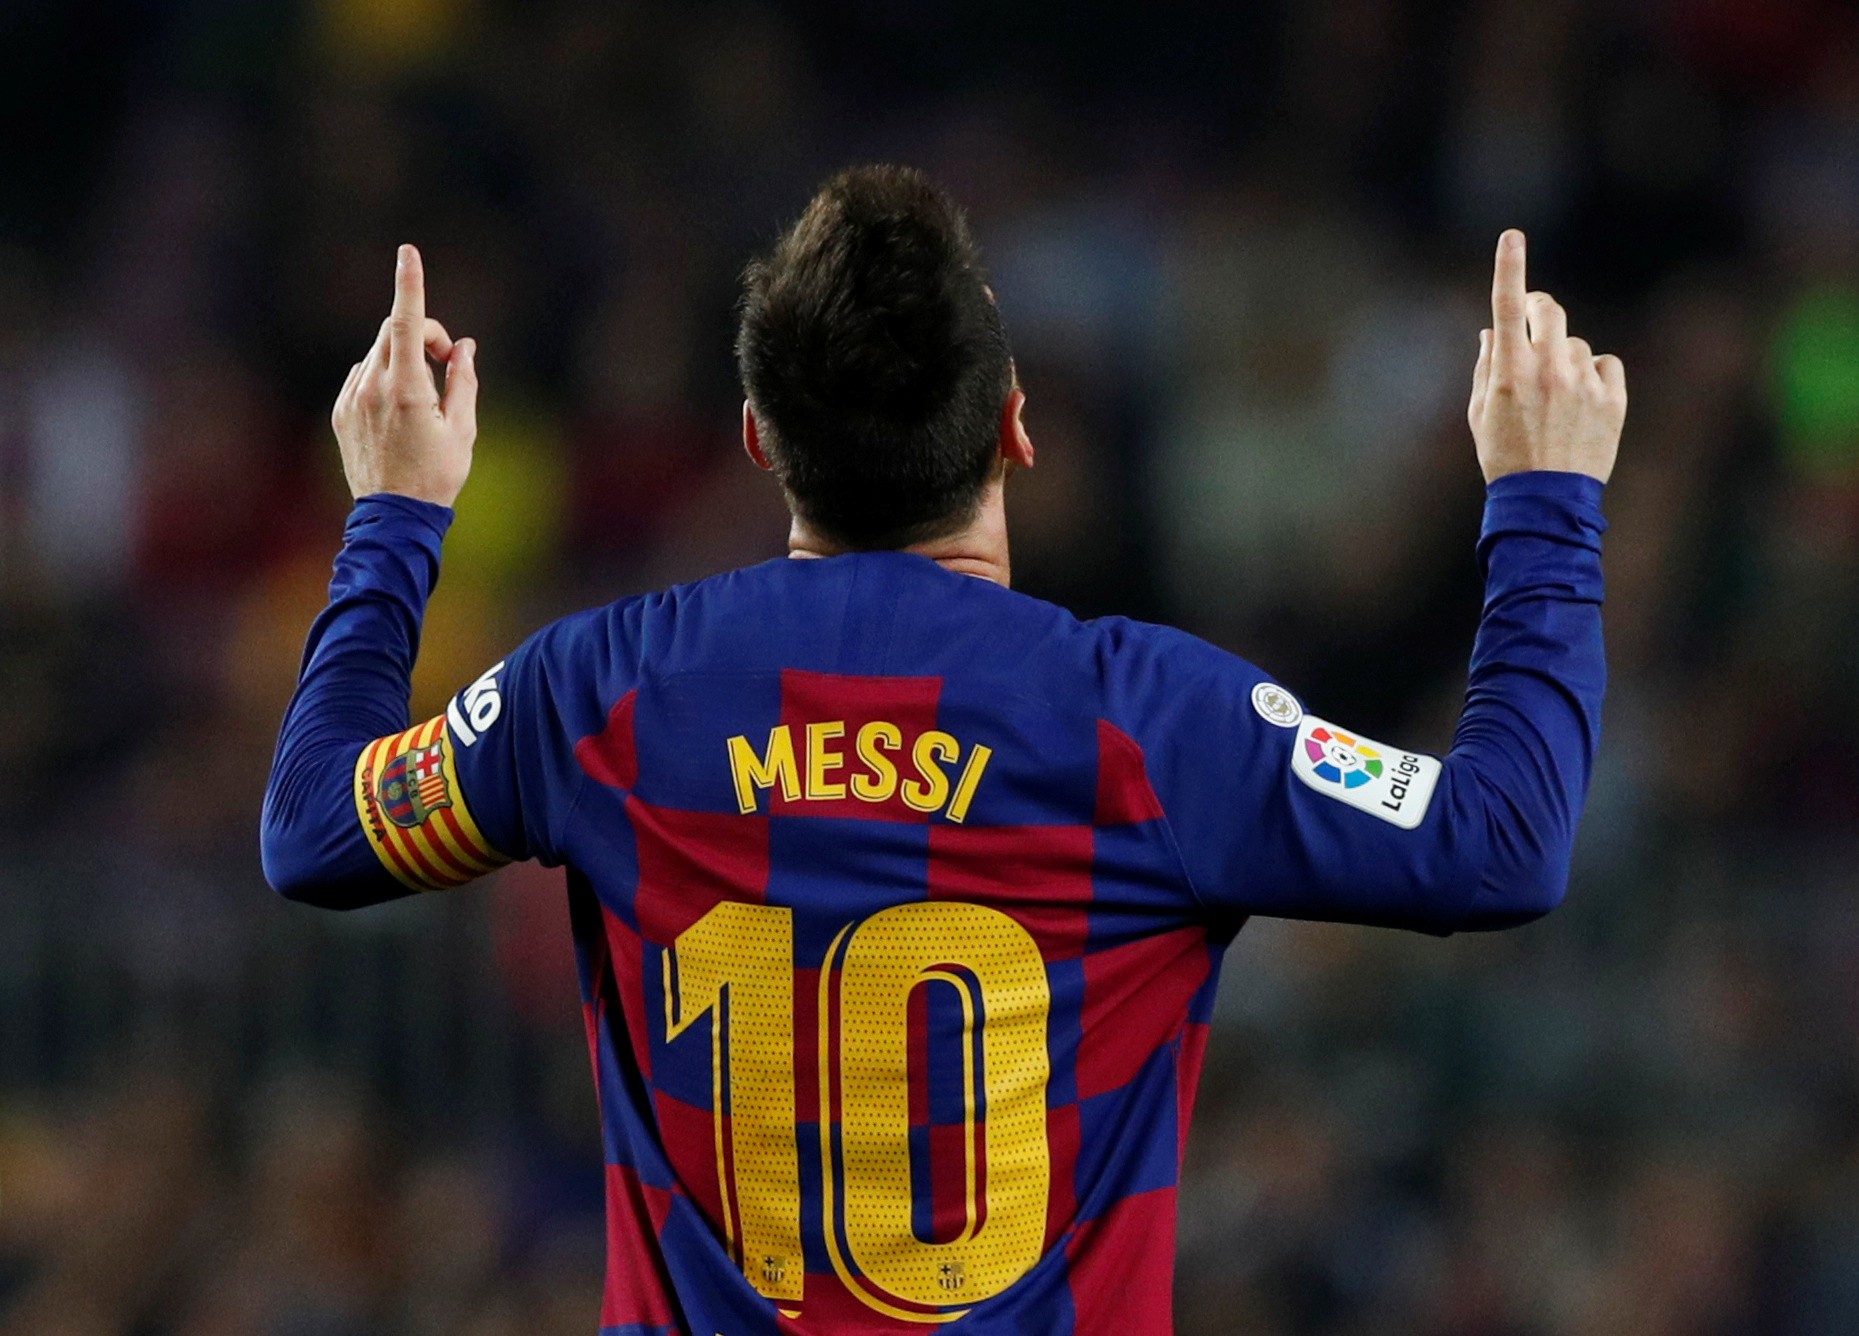 Ghi 608 bàn, Messi vượt mặt Ronaldo - Báo Người lao động